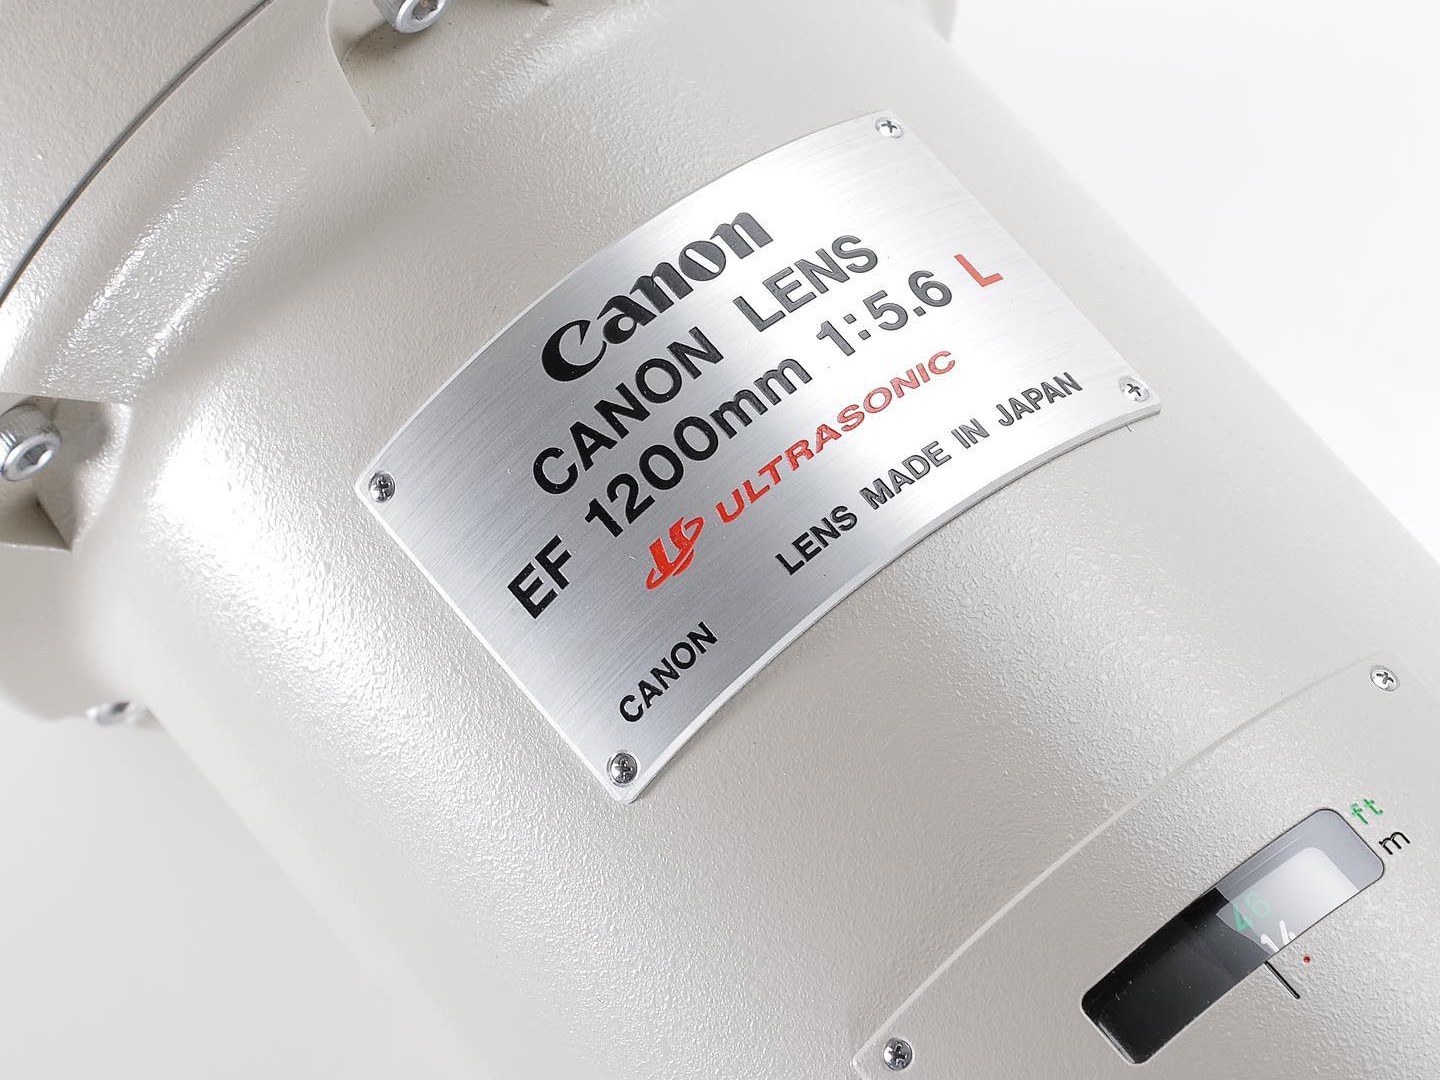 Canon EF 1200mm F5.6 L USM, chiếc ống kính tiêu cự dài nhất thế giới sắp được bán đấu giá